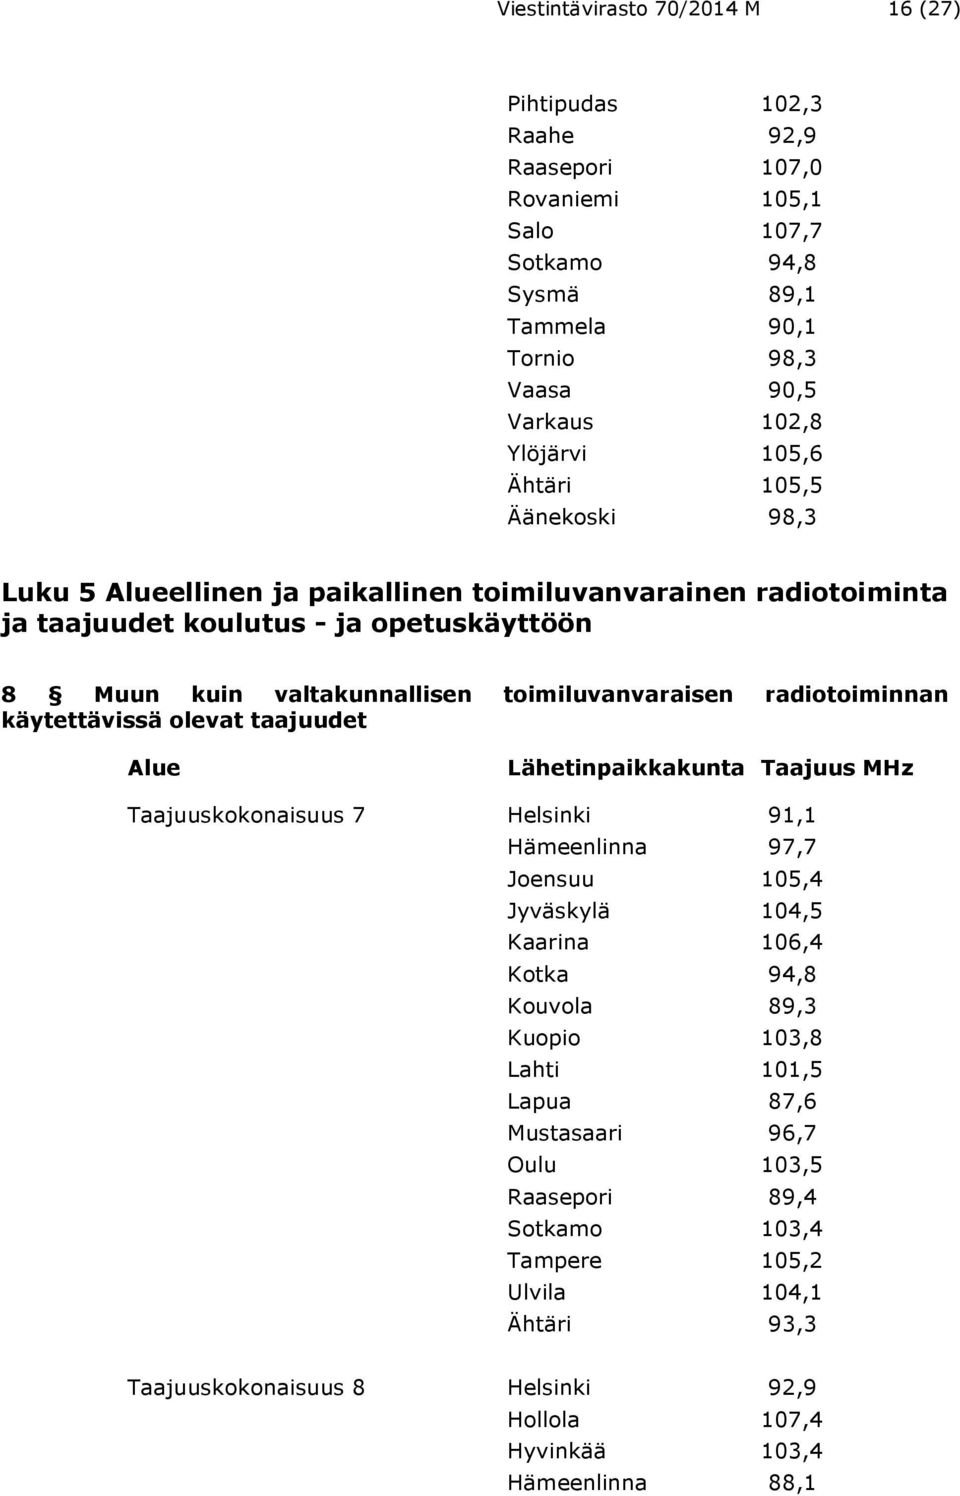 radiotoiminnan käytettävissä olevat taajuudet Alue Lähetinpaikkakunta Taajuus MHz Taajuuskokonaisuus 7 Helsinki 91,1 Hämeenlinna 97,7 Joensuu 105,4 Jyväskylä 104,5 Kaarina 106,4 Kotka 94,8 Kouvola